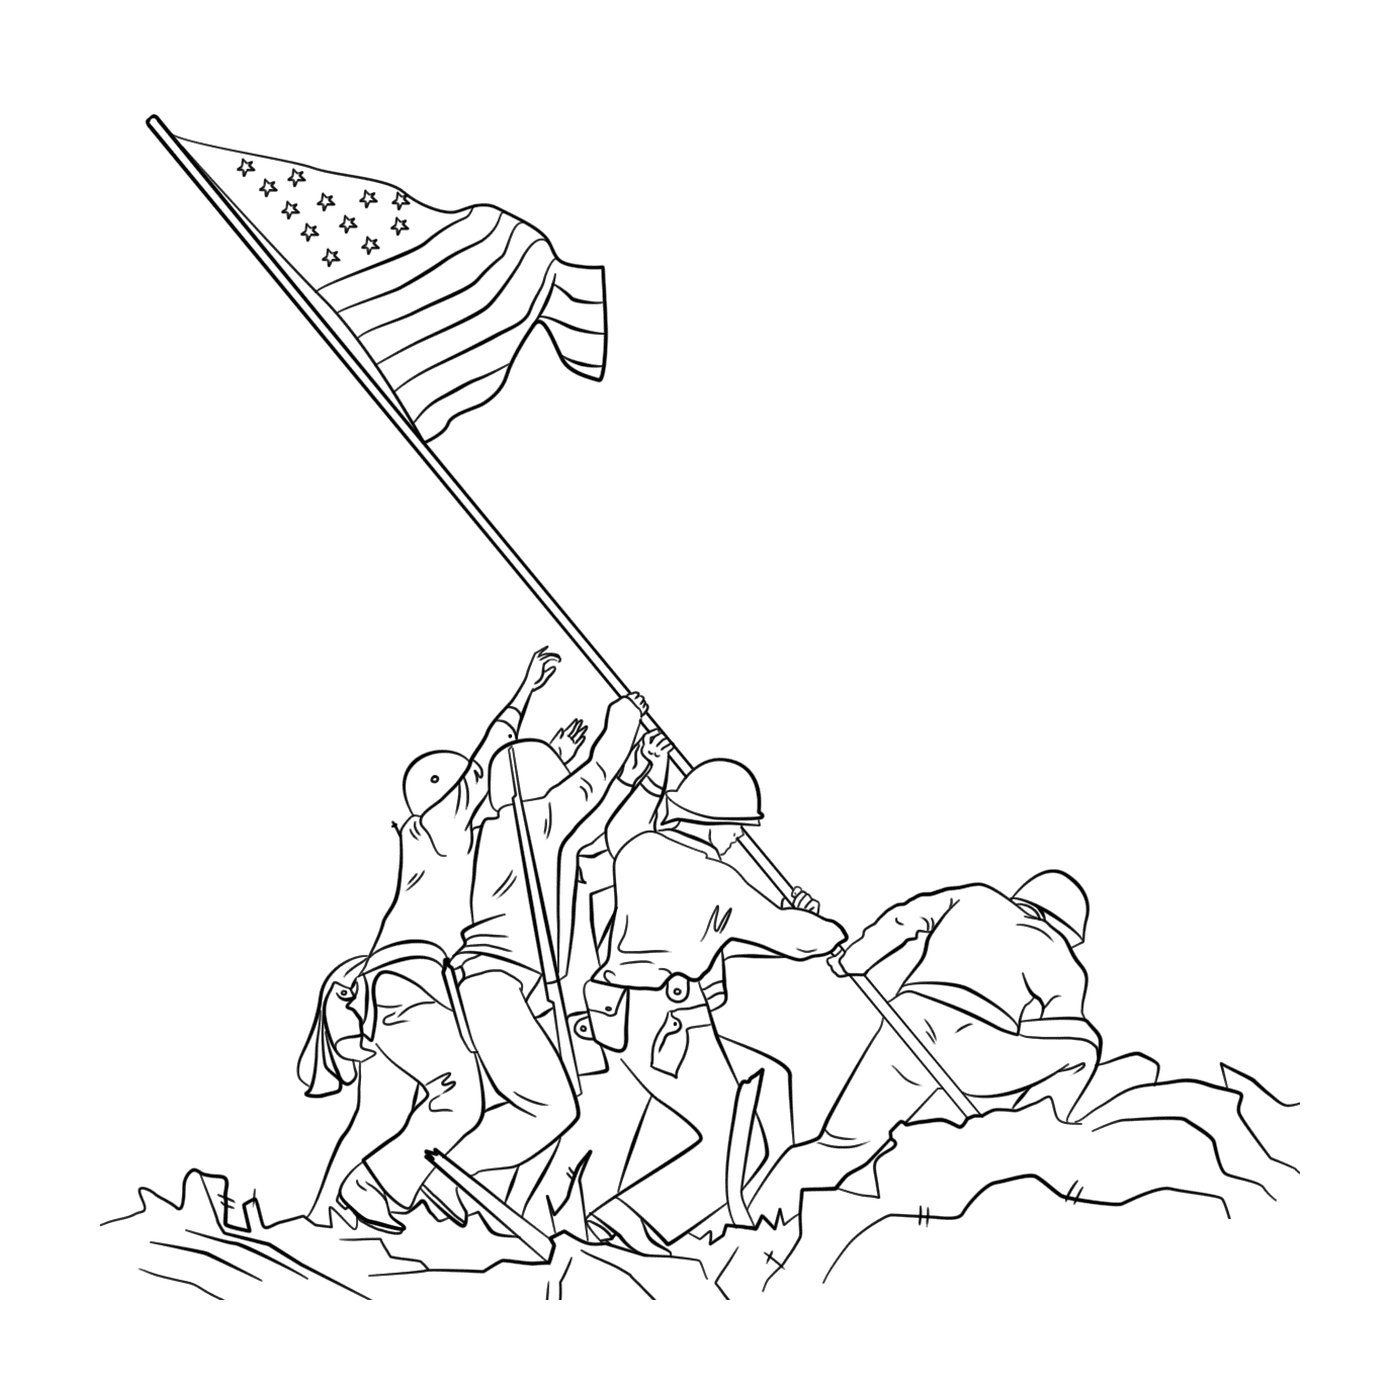  Gruppe von Menschen brandishing eine Flagge, wenn die Flagge auf Iwo Jima 